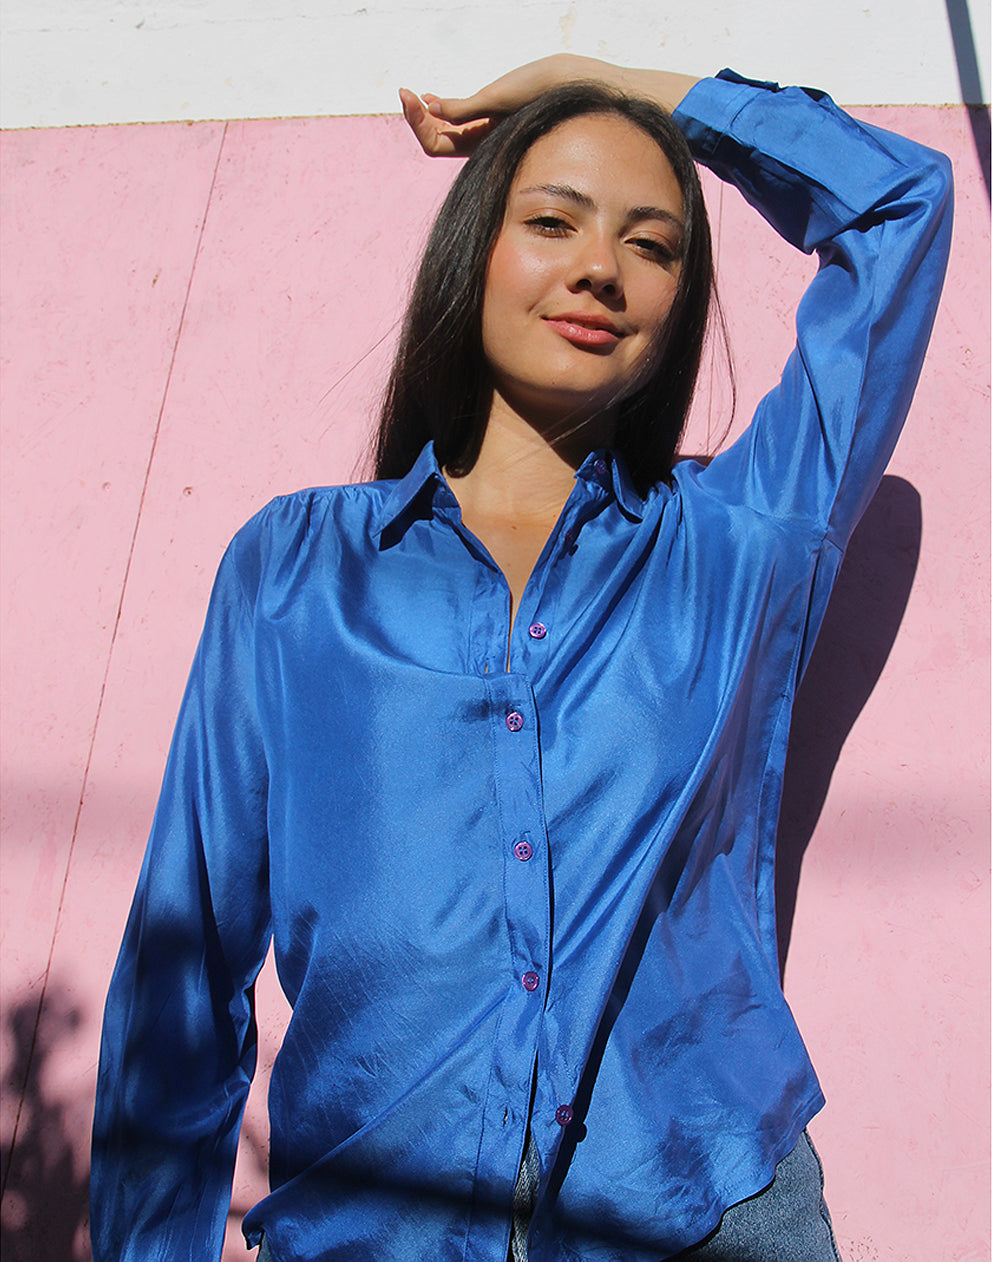 Blue Silk Shirt